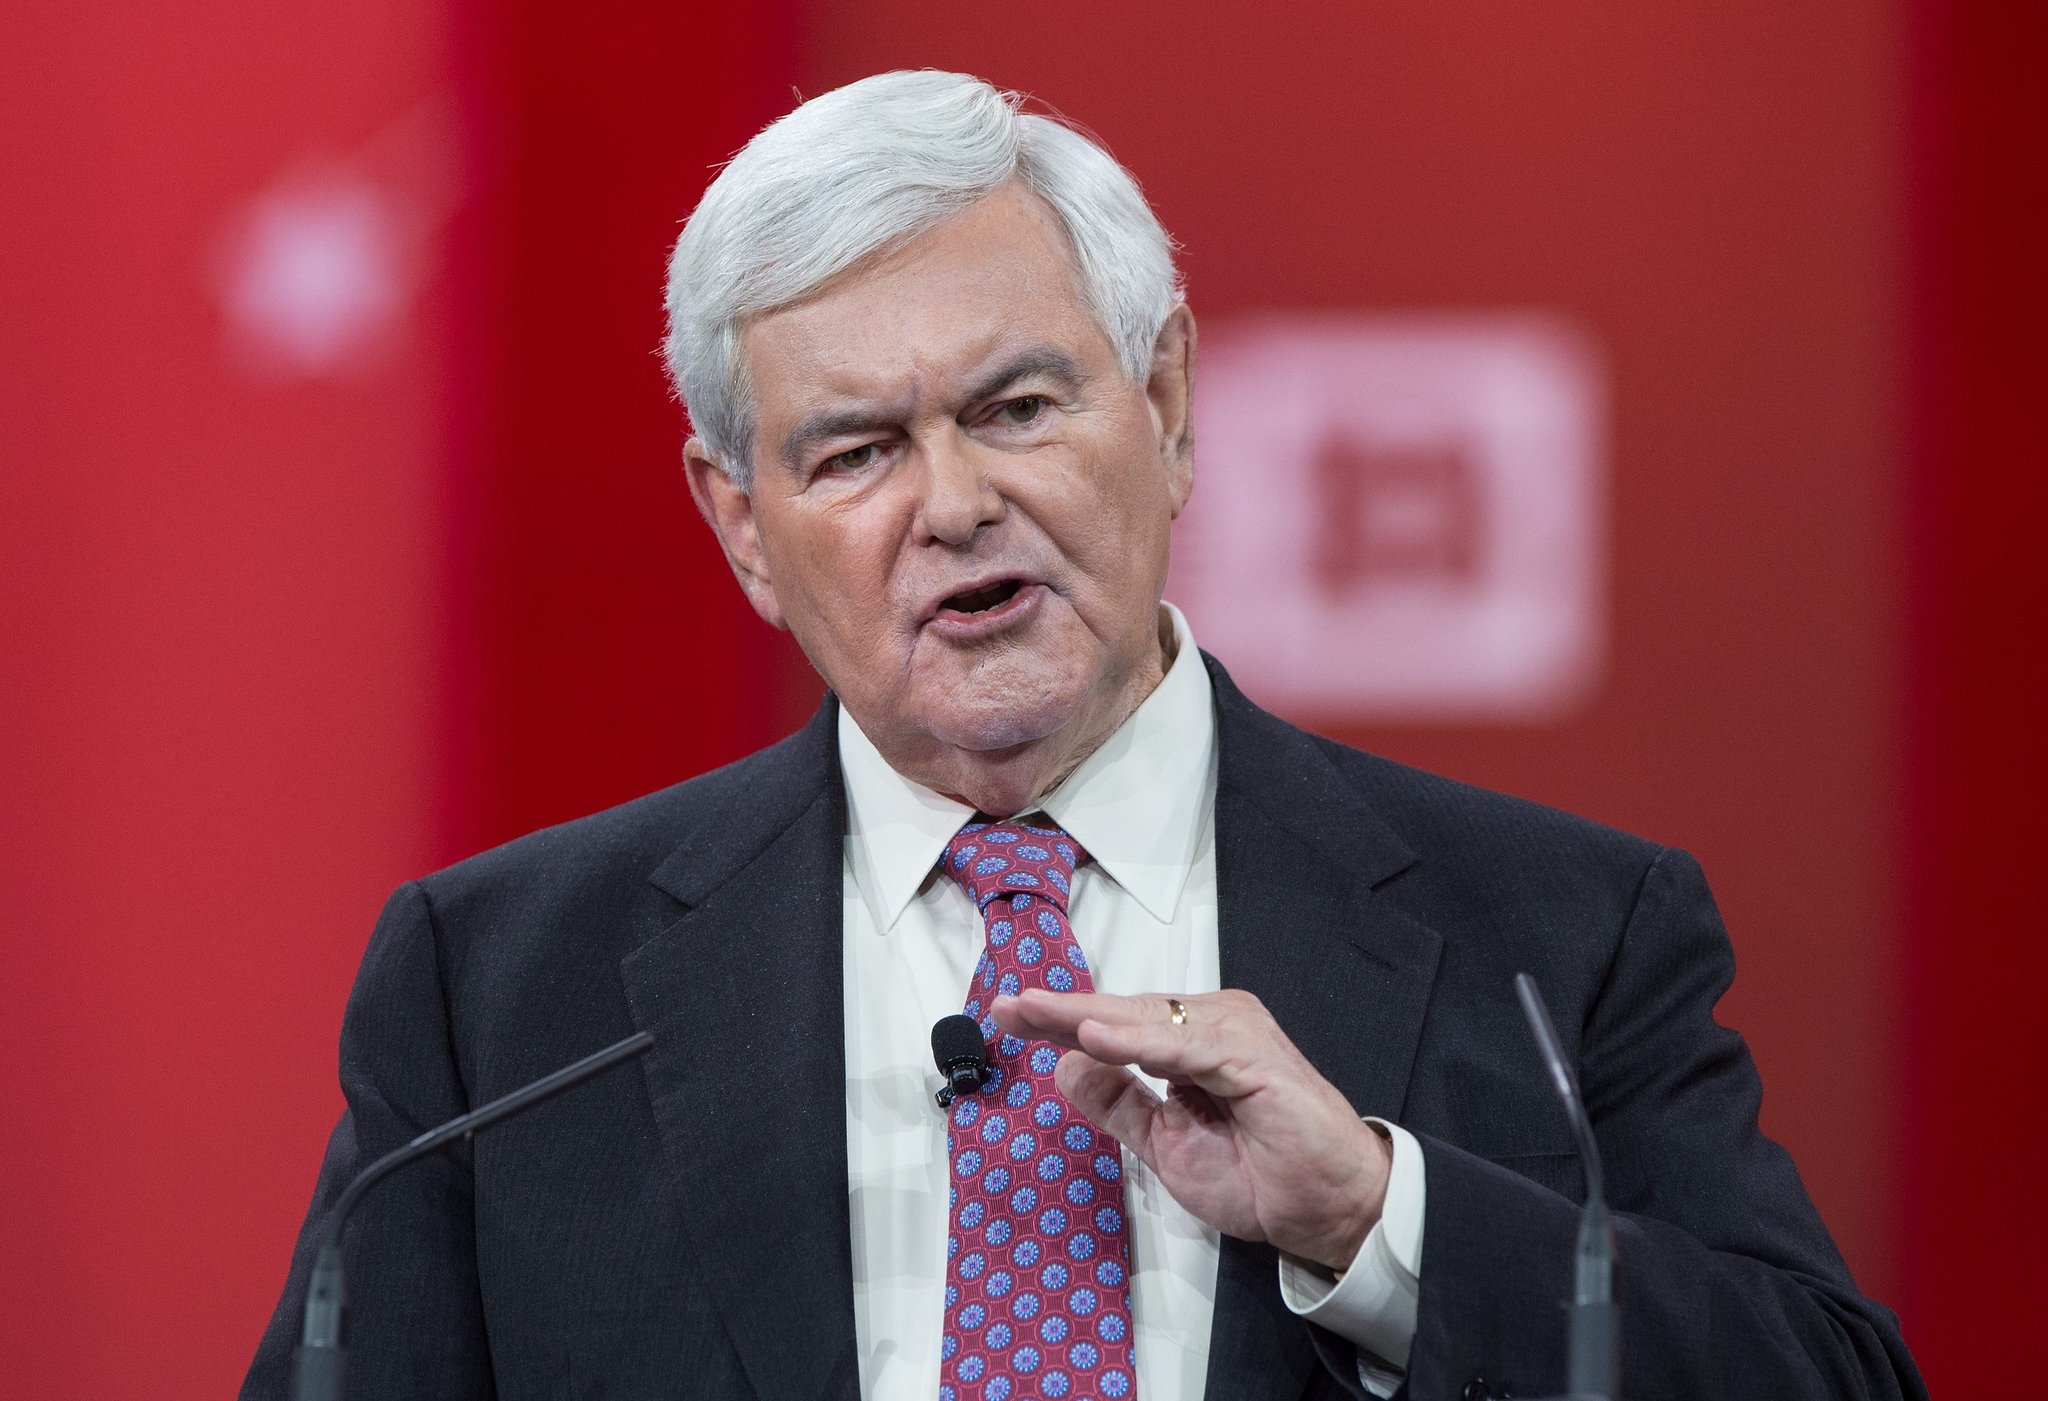 Newt Gingrich giving a speech